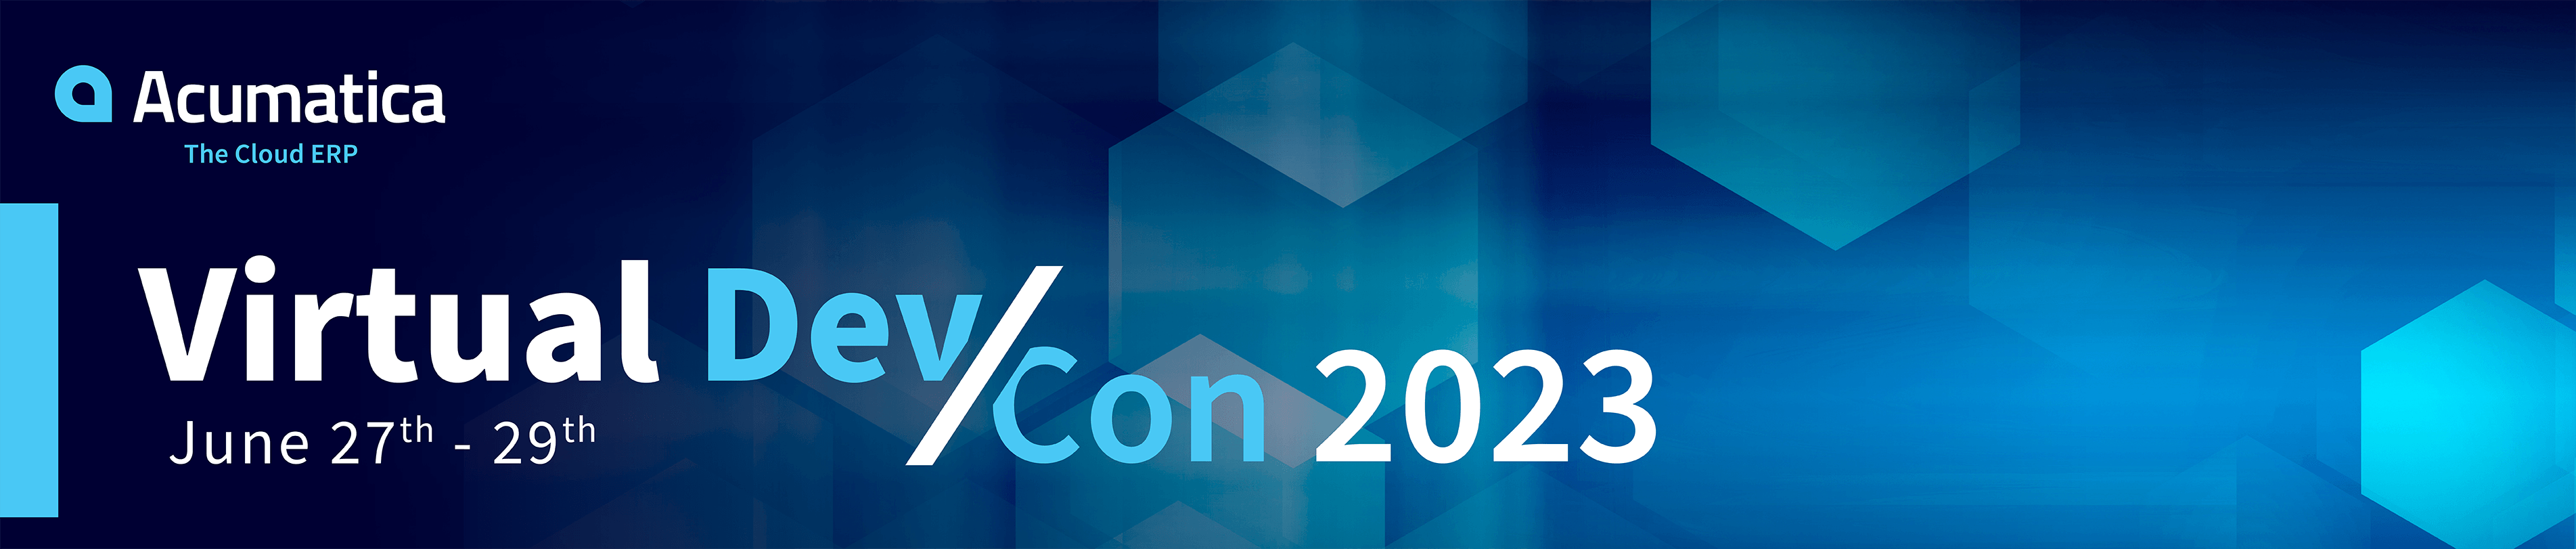 Acumatica Developer Conference 2023